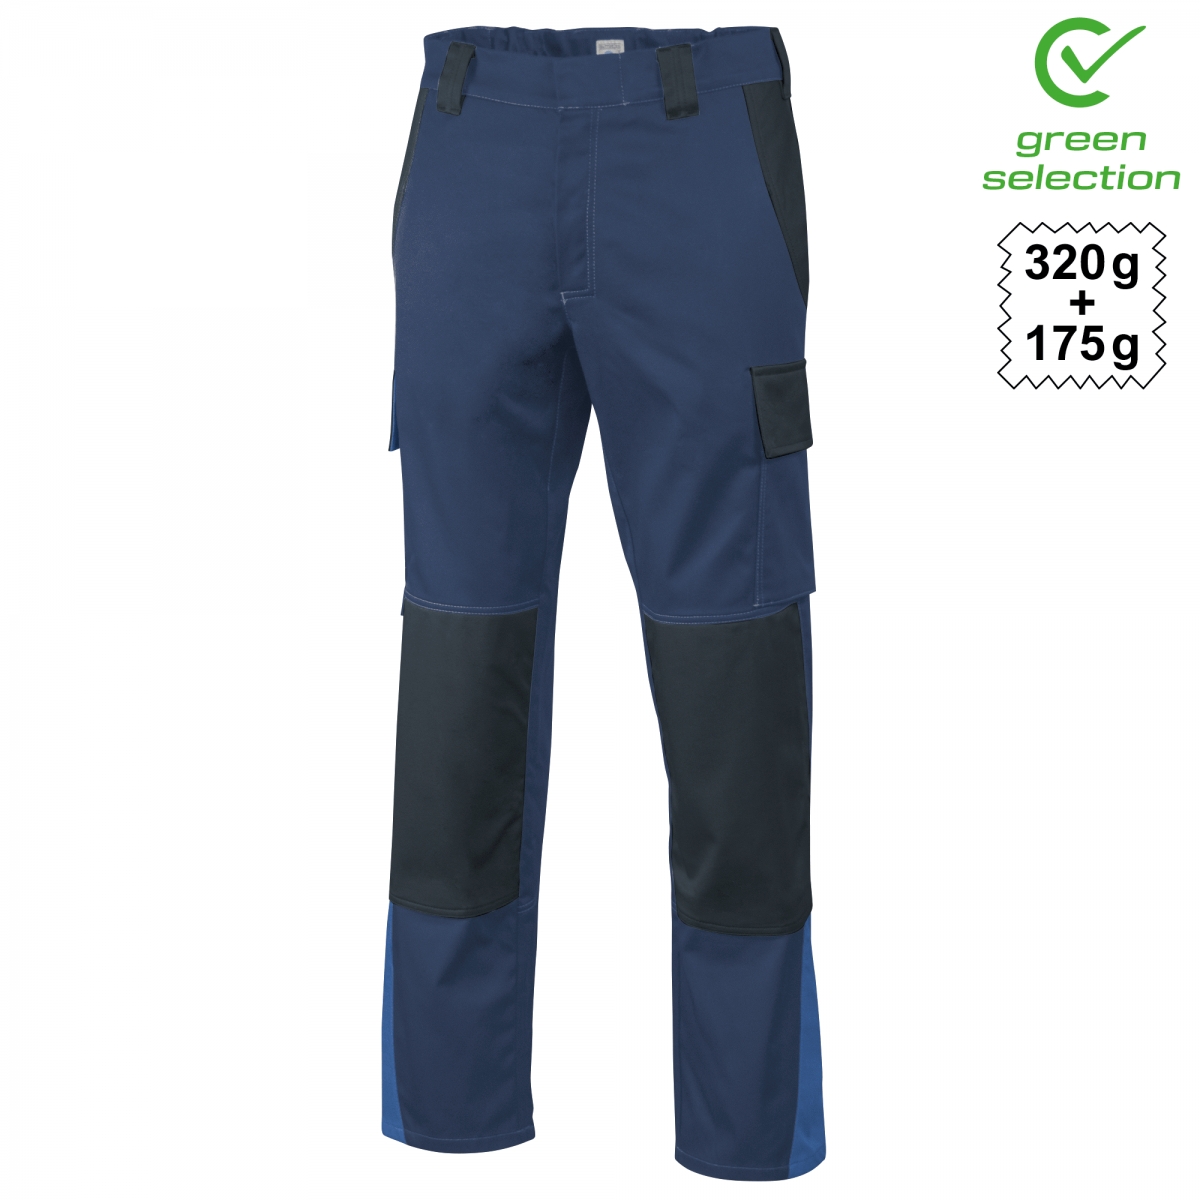 Teamdress-Bundhose ecoRover Safety Plus, marine/schwarz/blau